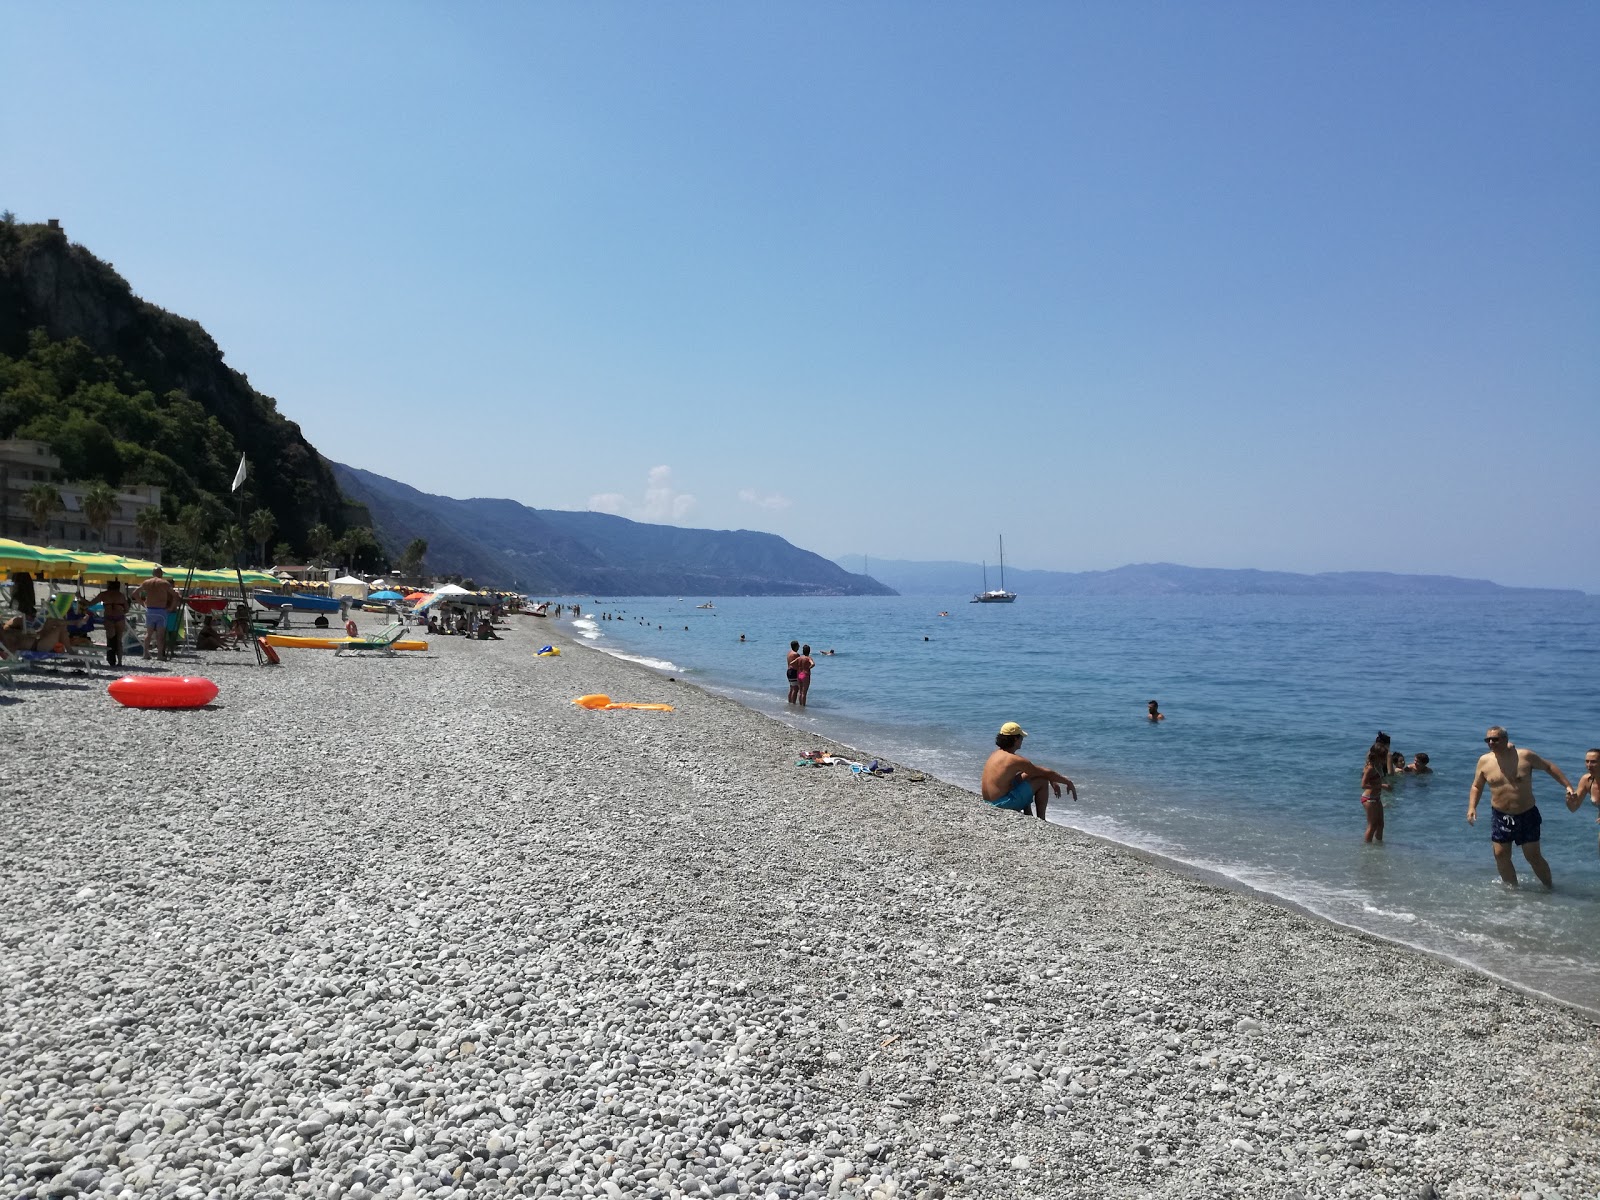 Favazzina beach'in fotoğrafı gri ince çakıl taş yüzey ile